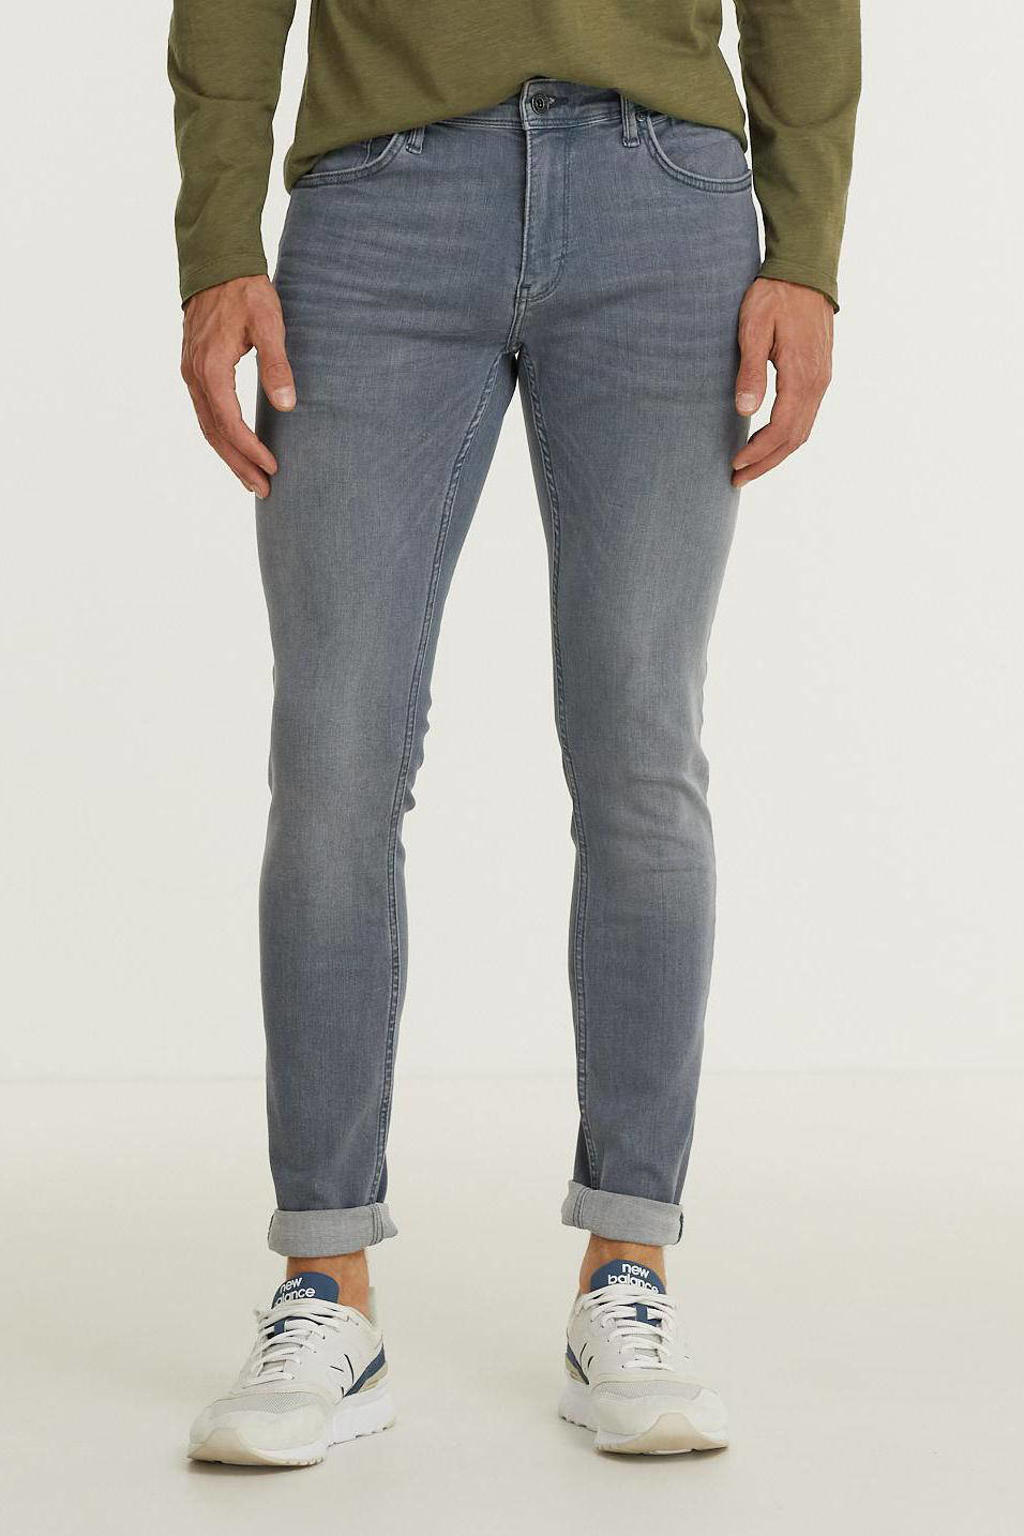 Purewhite skinny jeans The Jone W0160 blauw